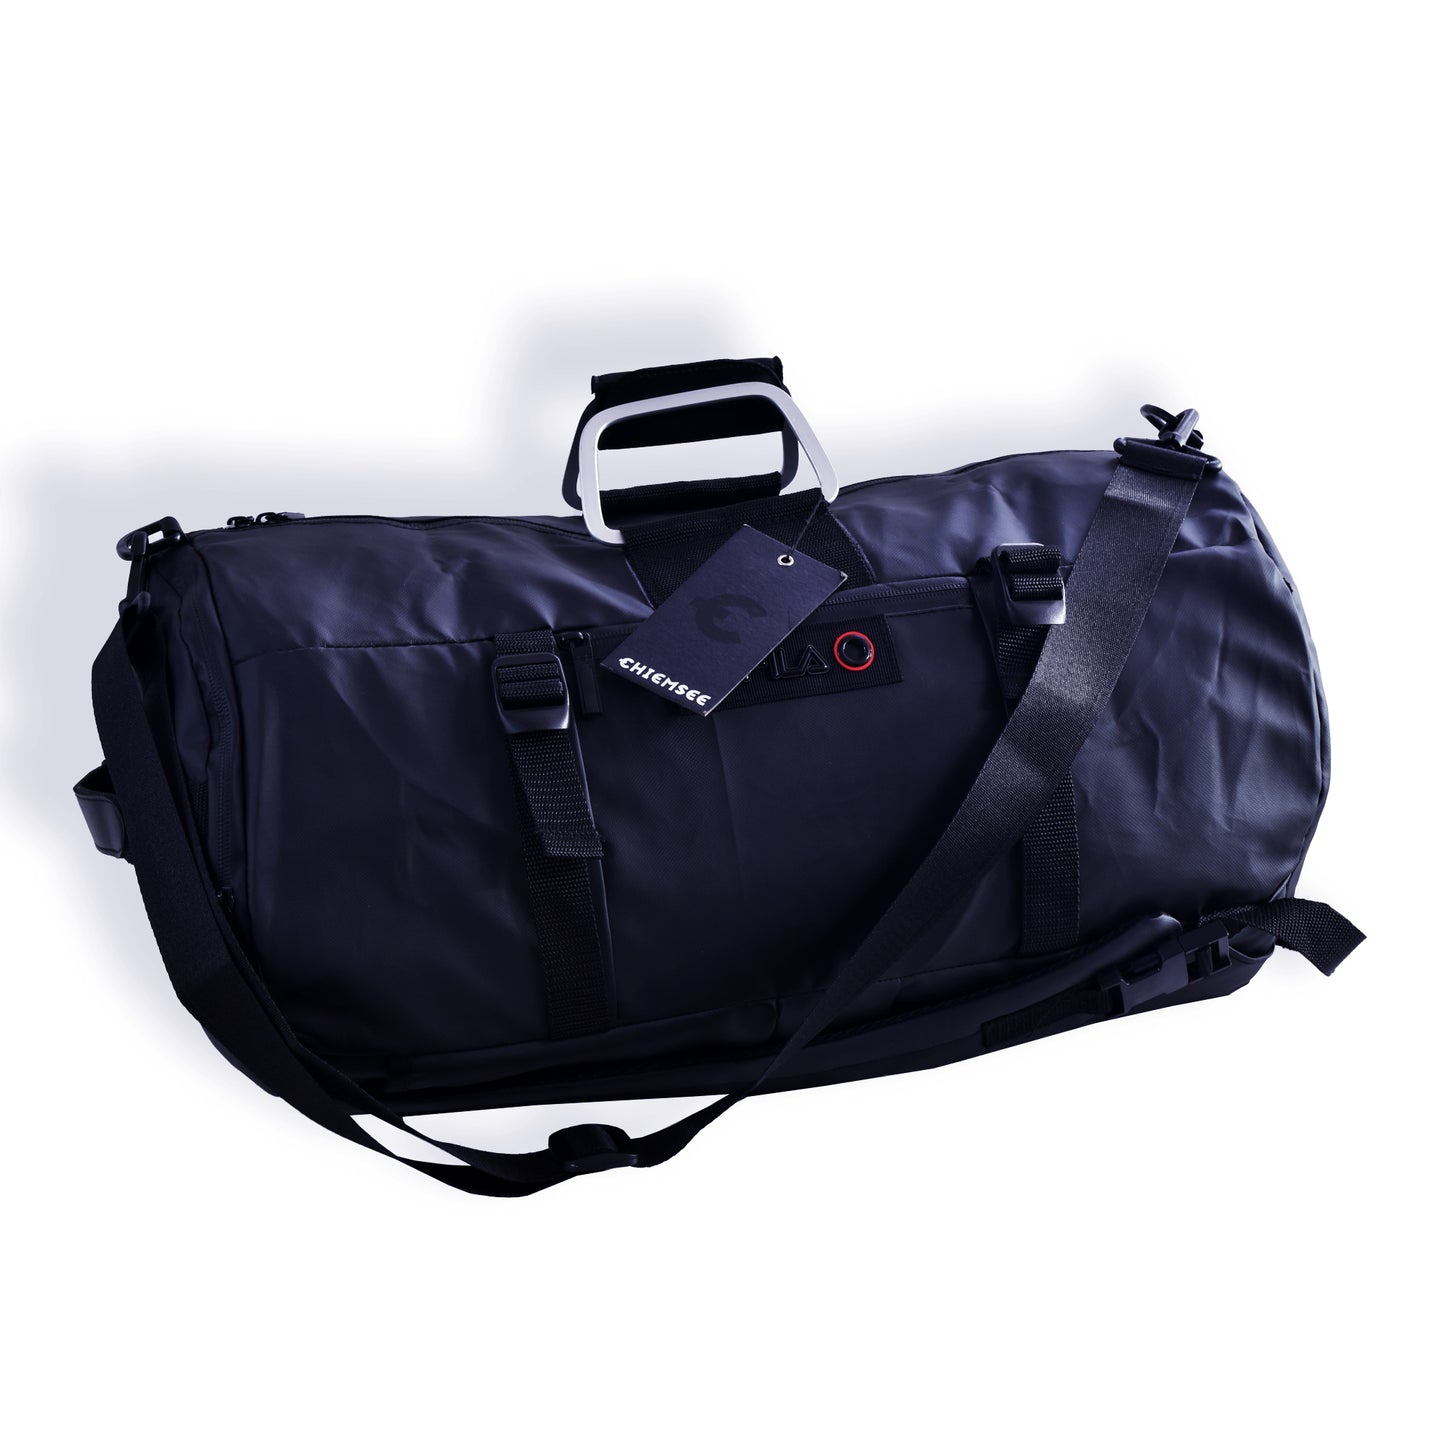 4in1 Bag Deep Navy Blue - Travel Bag / Gym Bag